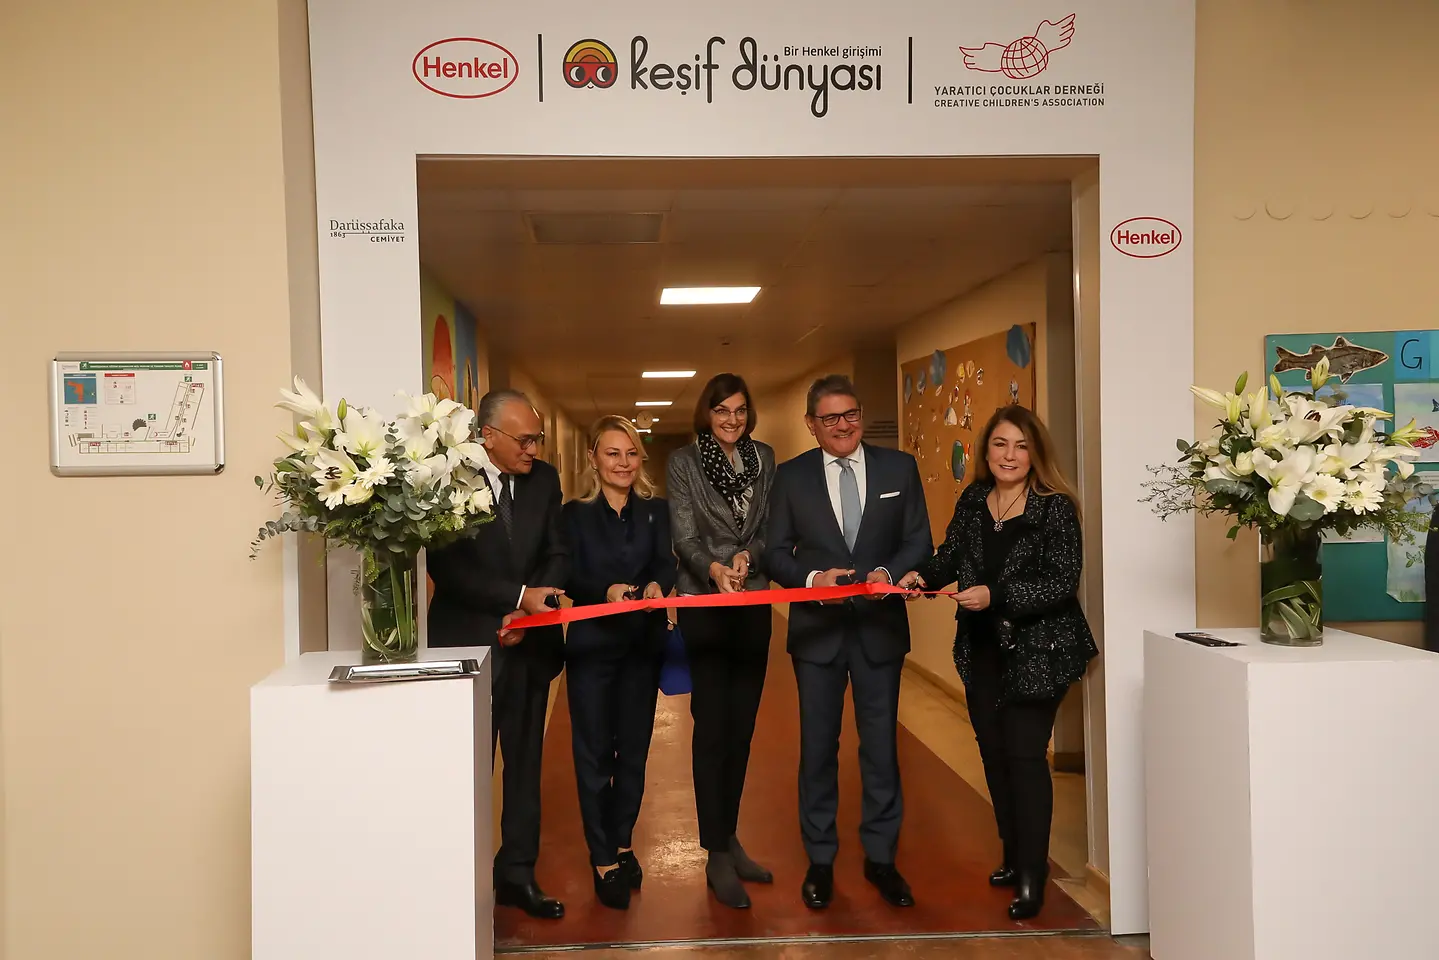 Henkel, Keşif Dünyası’nın Türkiye’deki İlk Merkezini Darüşşafaka’da açtı.